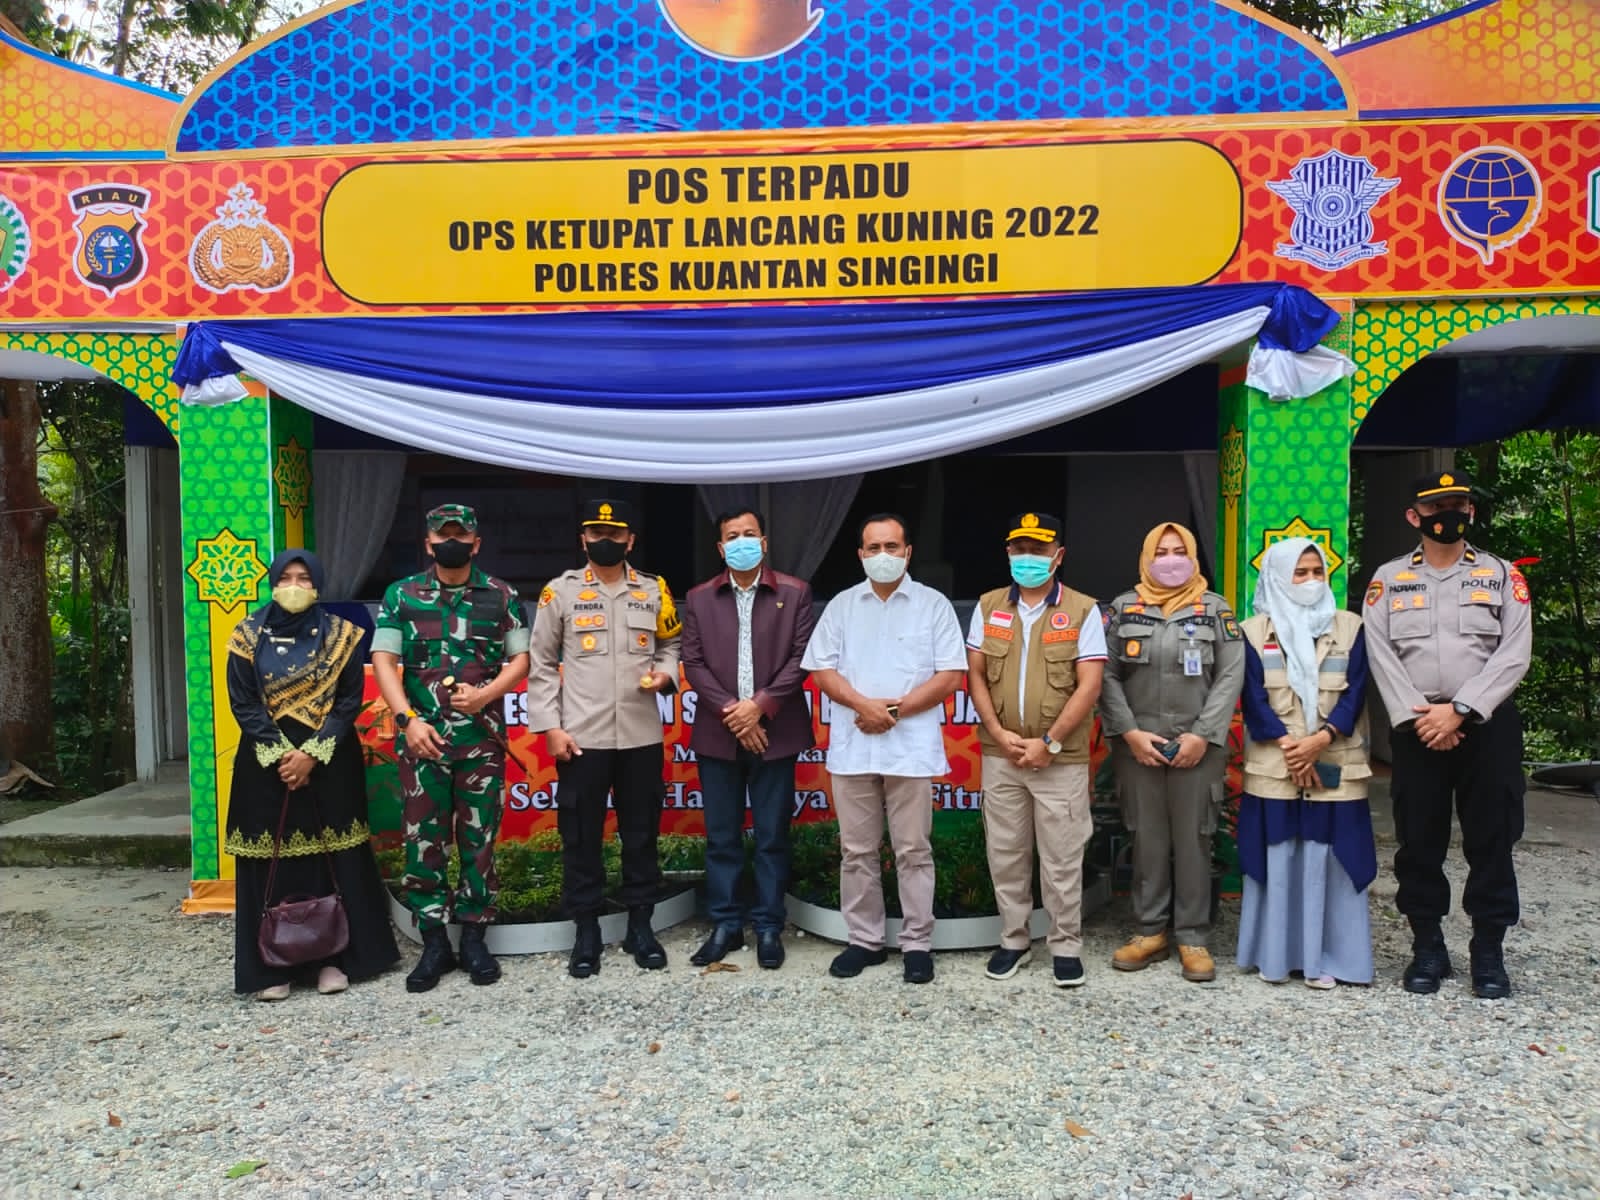 Bersama Bupati Suhardiman Amby, Kapolres Kuansing Kunjungi Pos Ops Ketupat Lancang Kuning 2022